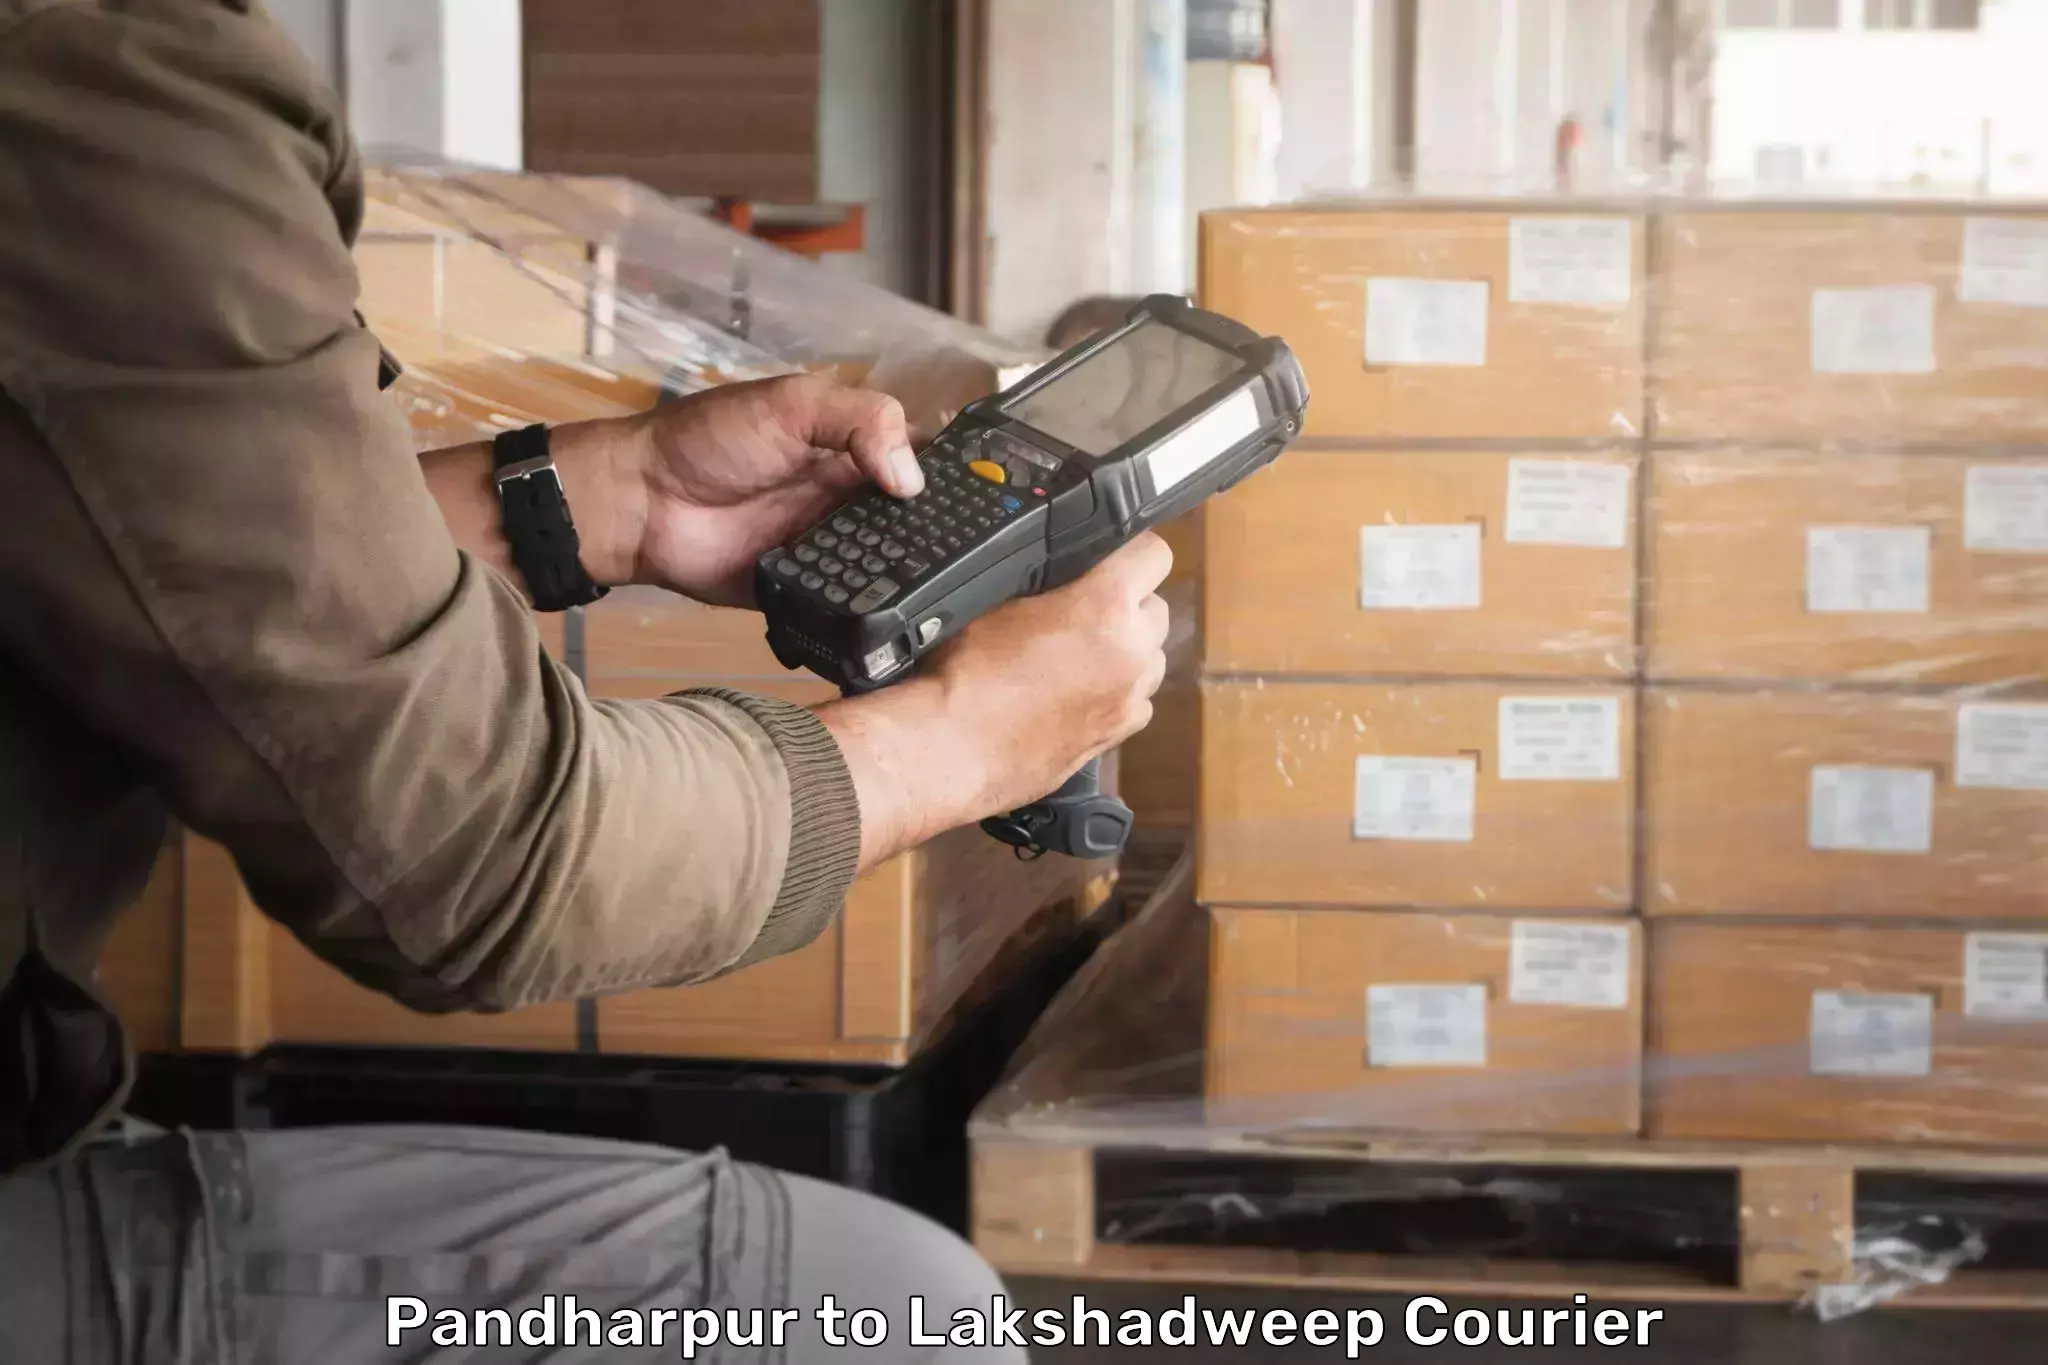 Tech-enabled shipping Pandharpur to Lakshadweep